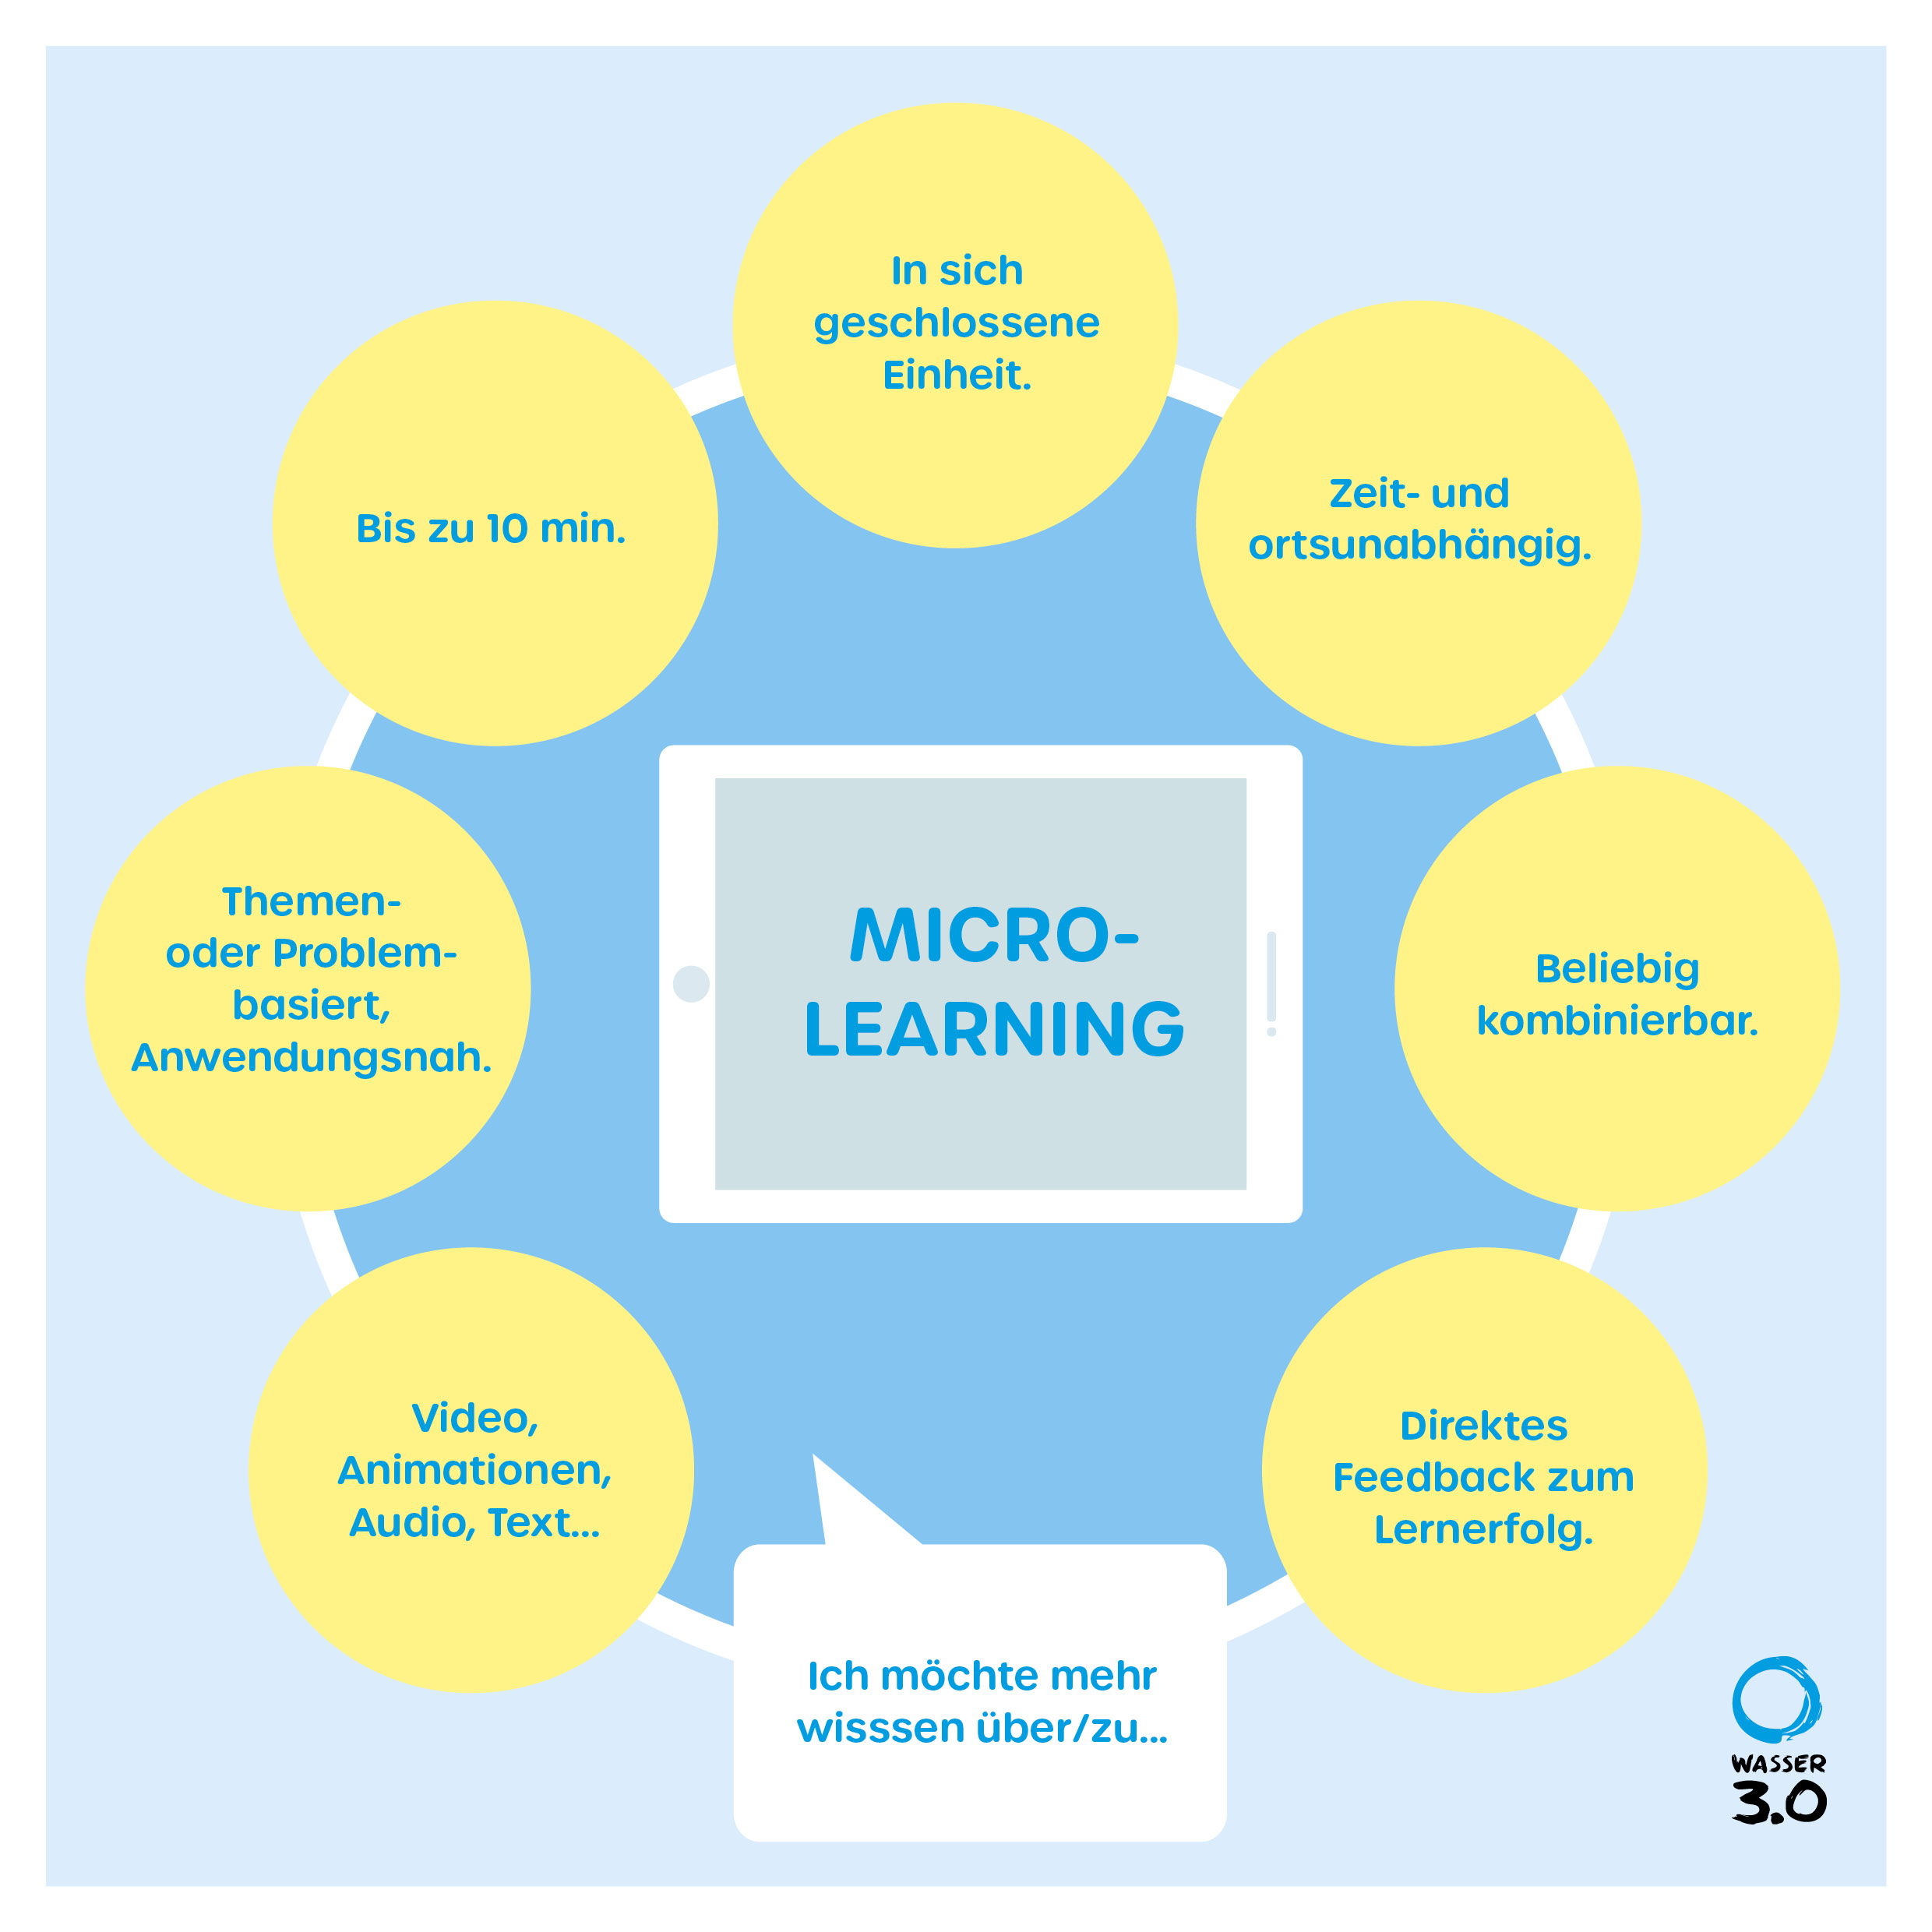 Unsere Bildungsinhalte entstehen mit Hilfe von microlearning-Tools